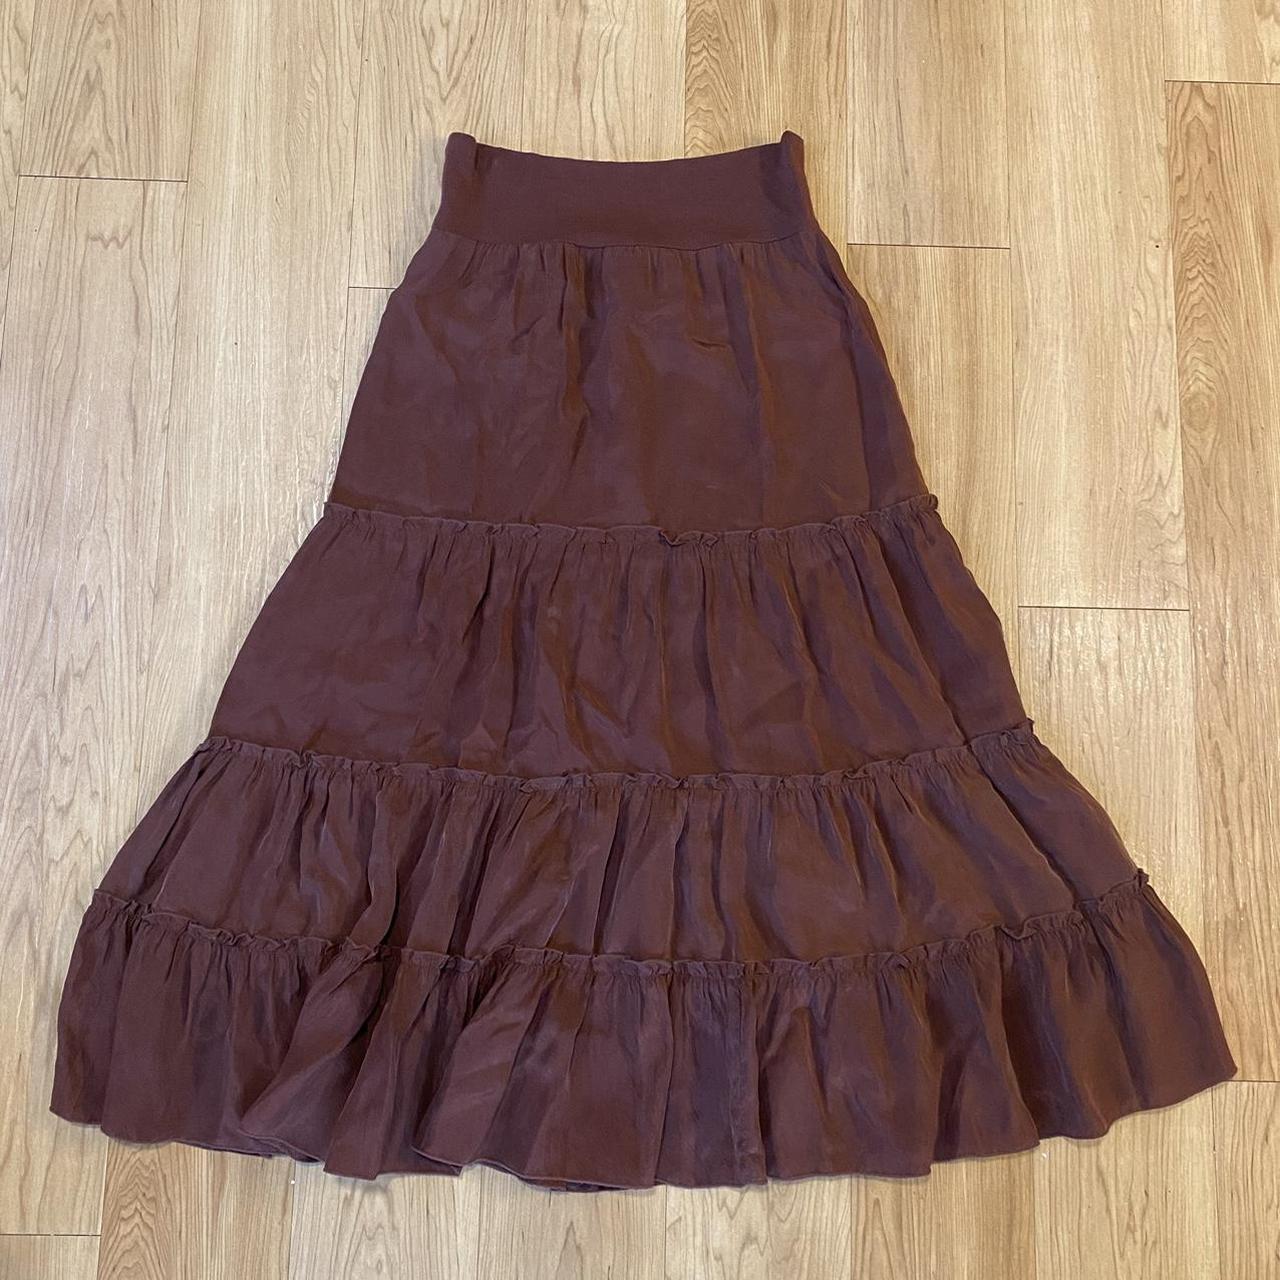 Cabi Women's Brown Skirt